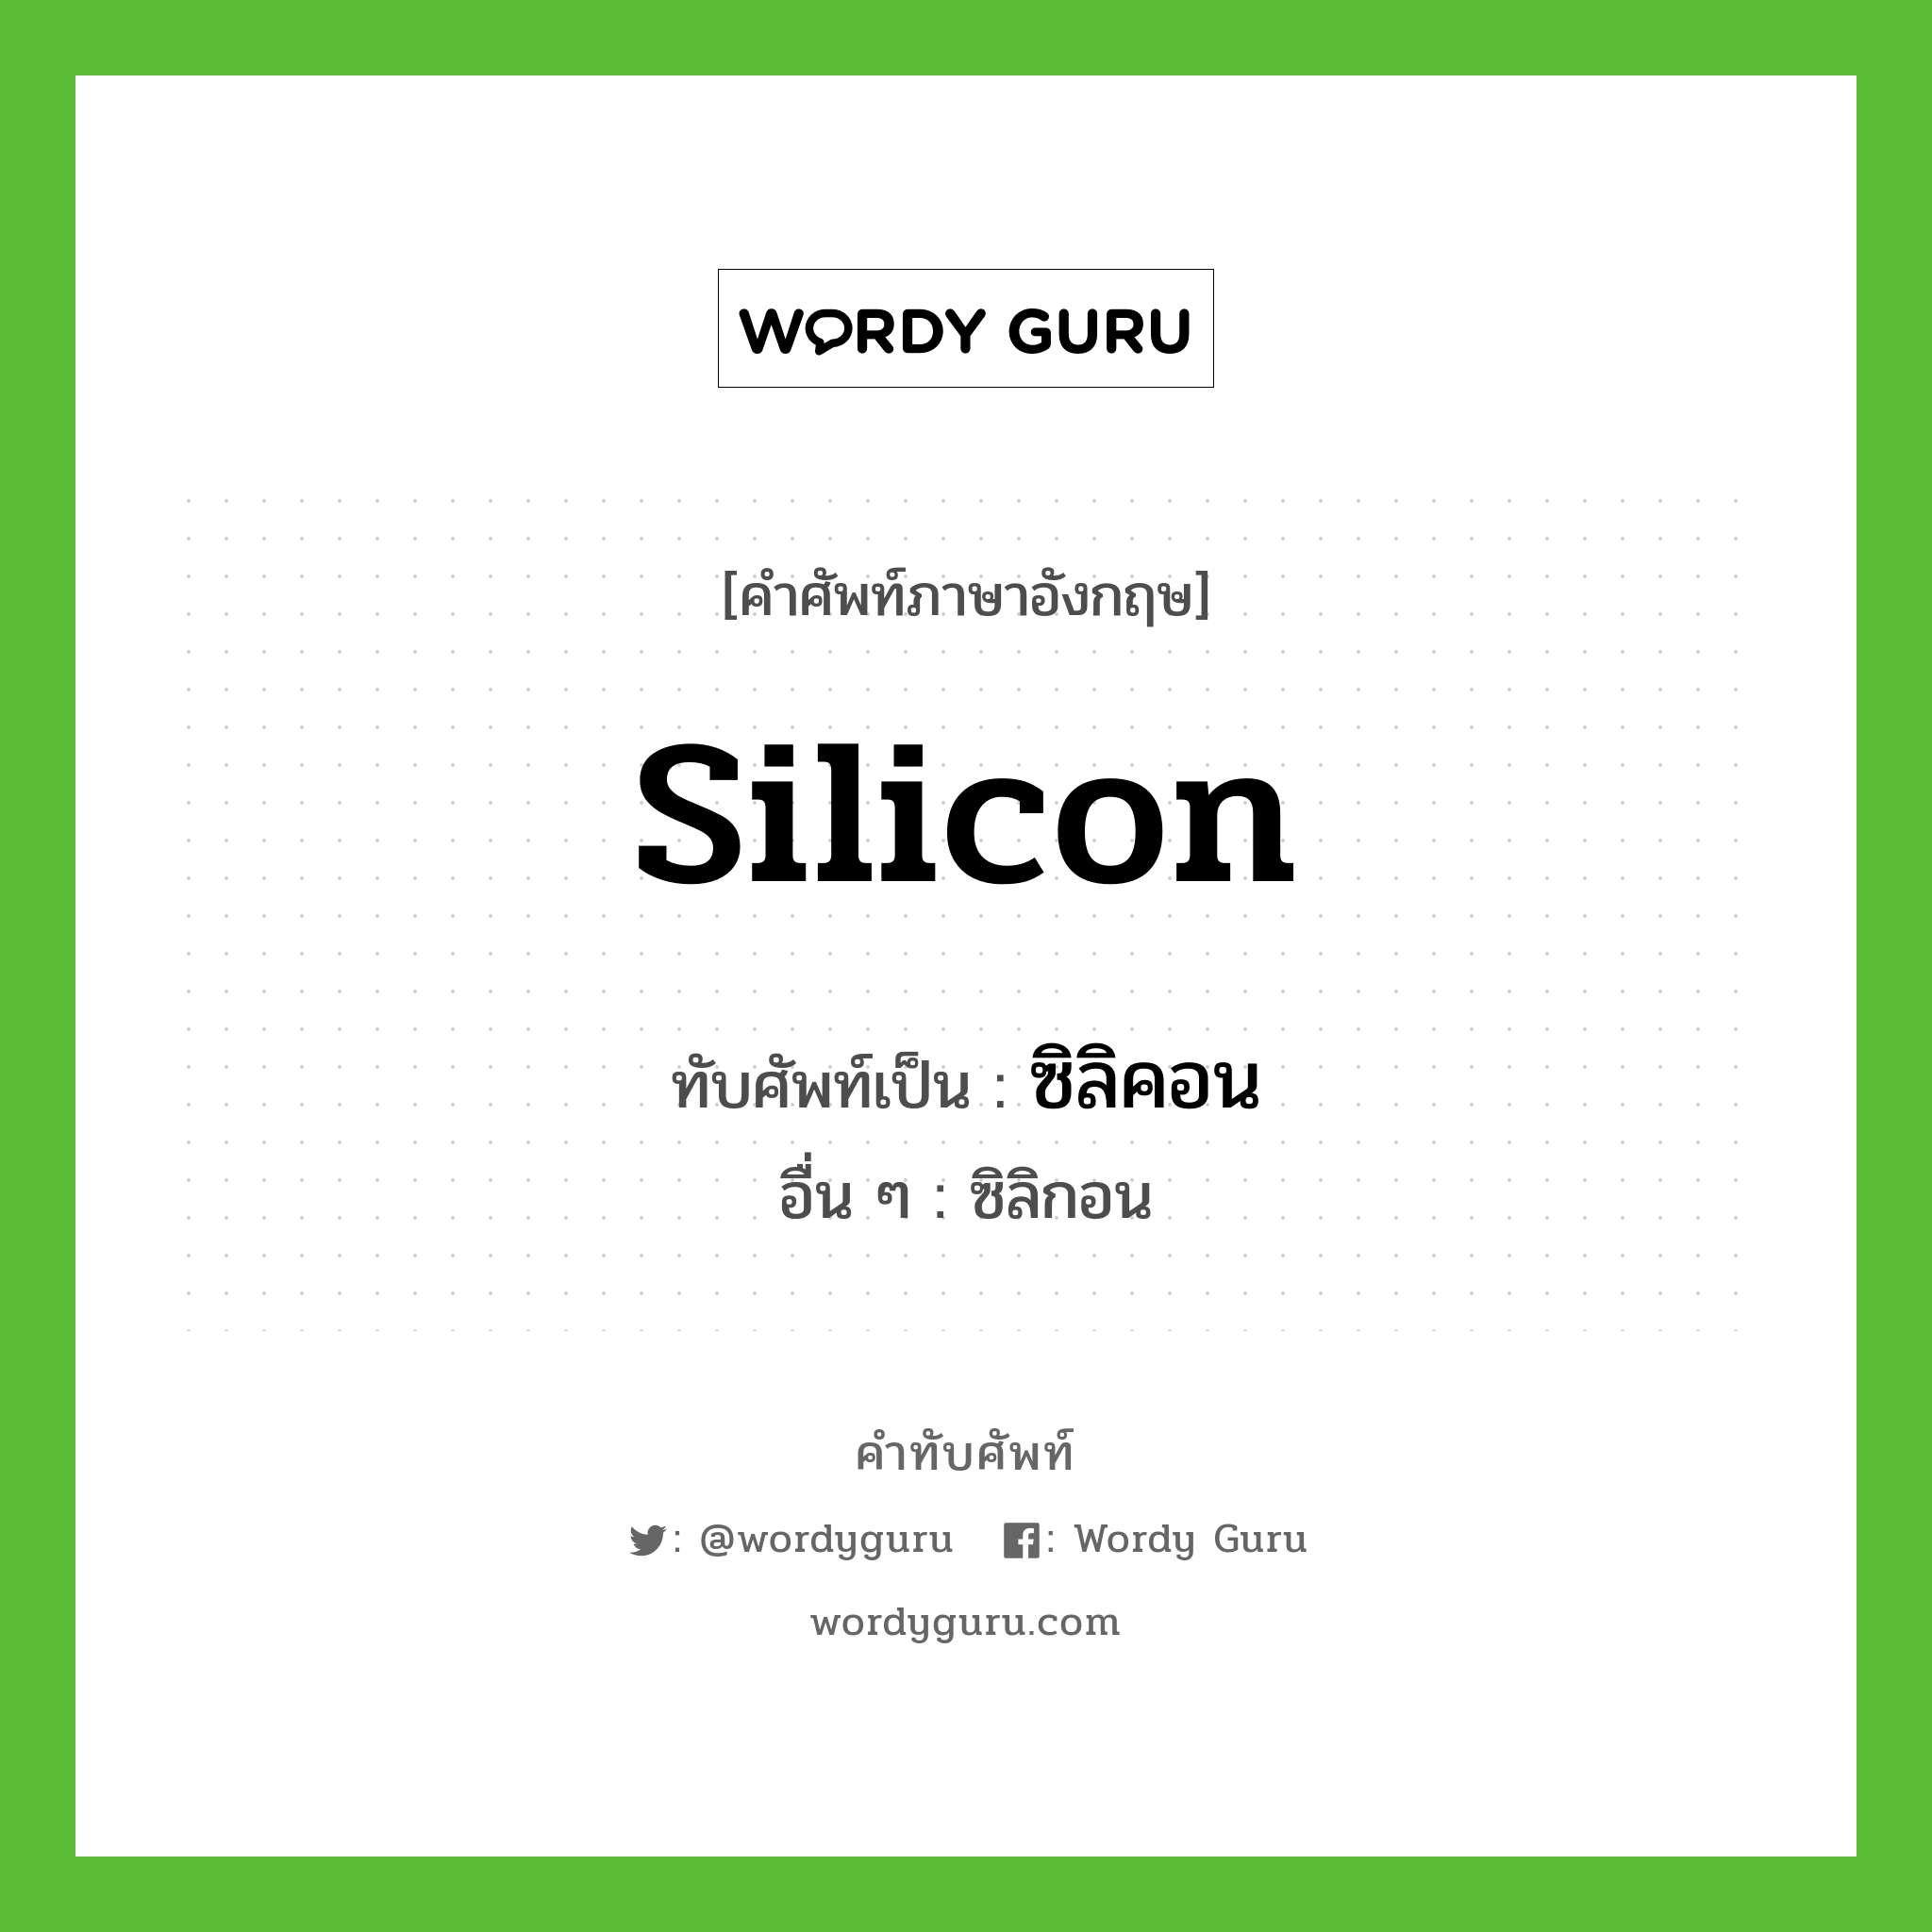 ซิลิคอน เขียนอย่างไร?, คำศัพท์ภาษาอังกฤษ ซิลิคอน ทับศัพท์เป็น silicon อื่น ๆ ซิลิกอน